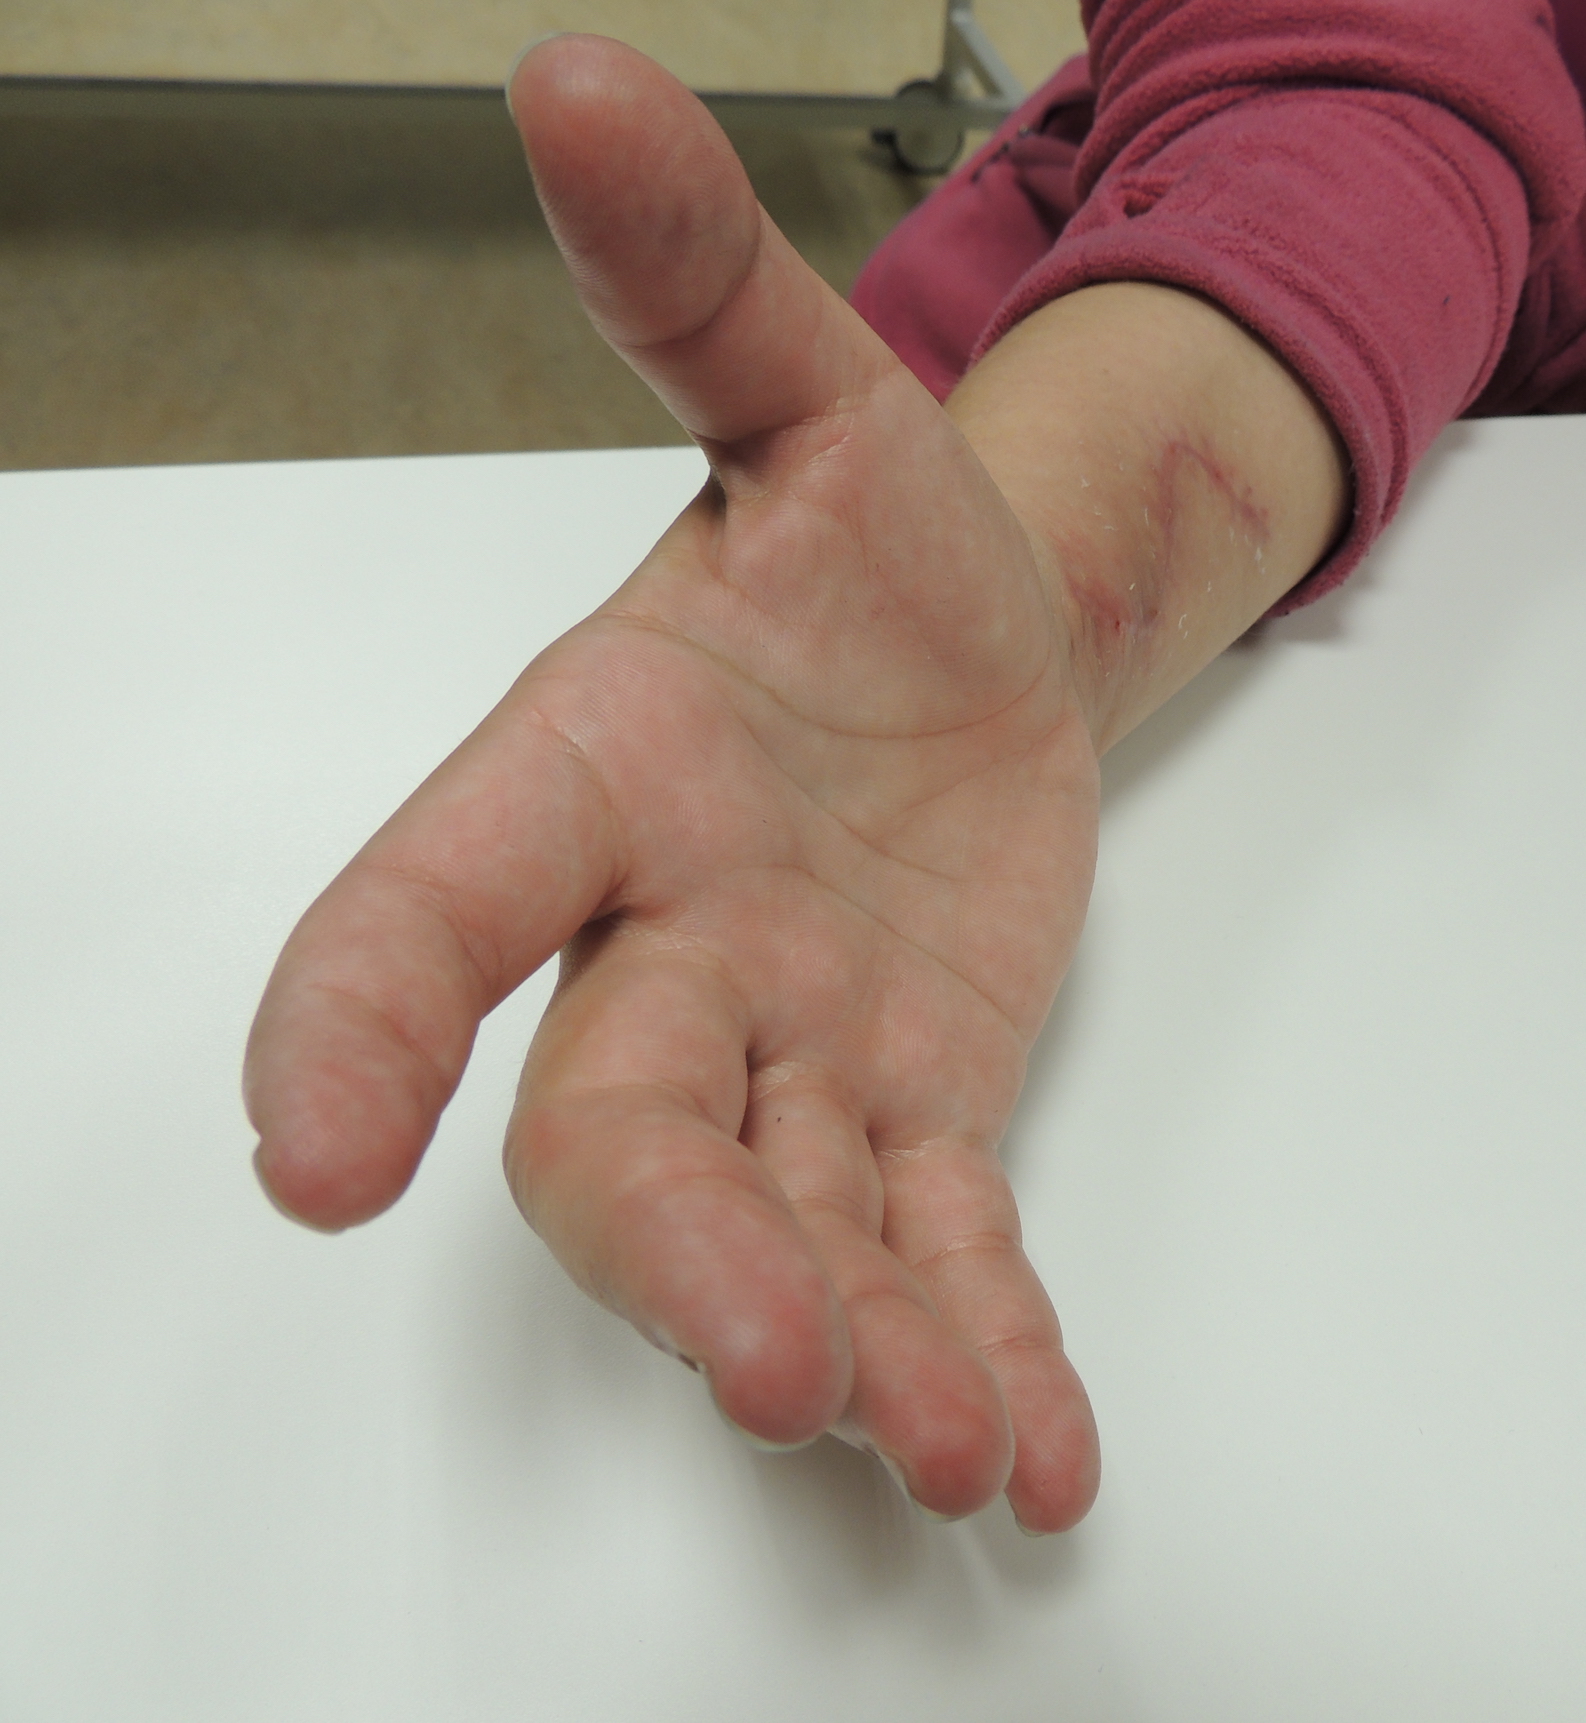 Chirurgické uvolnění srůstů šlach ruky